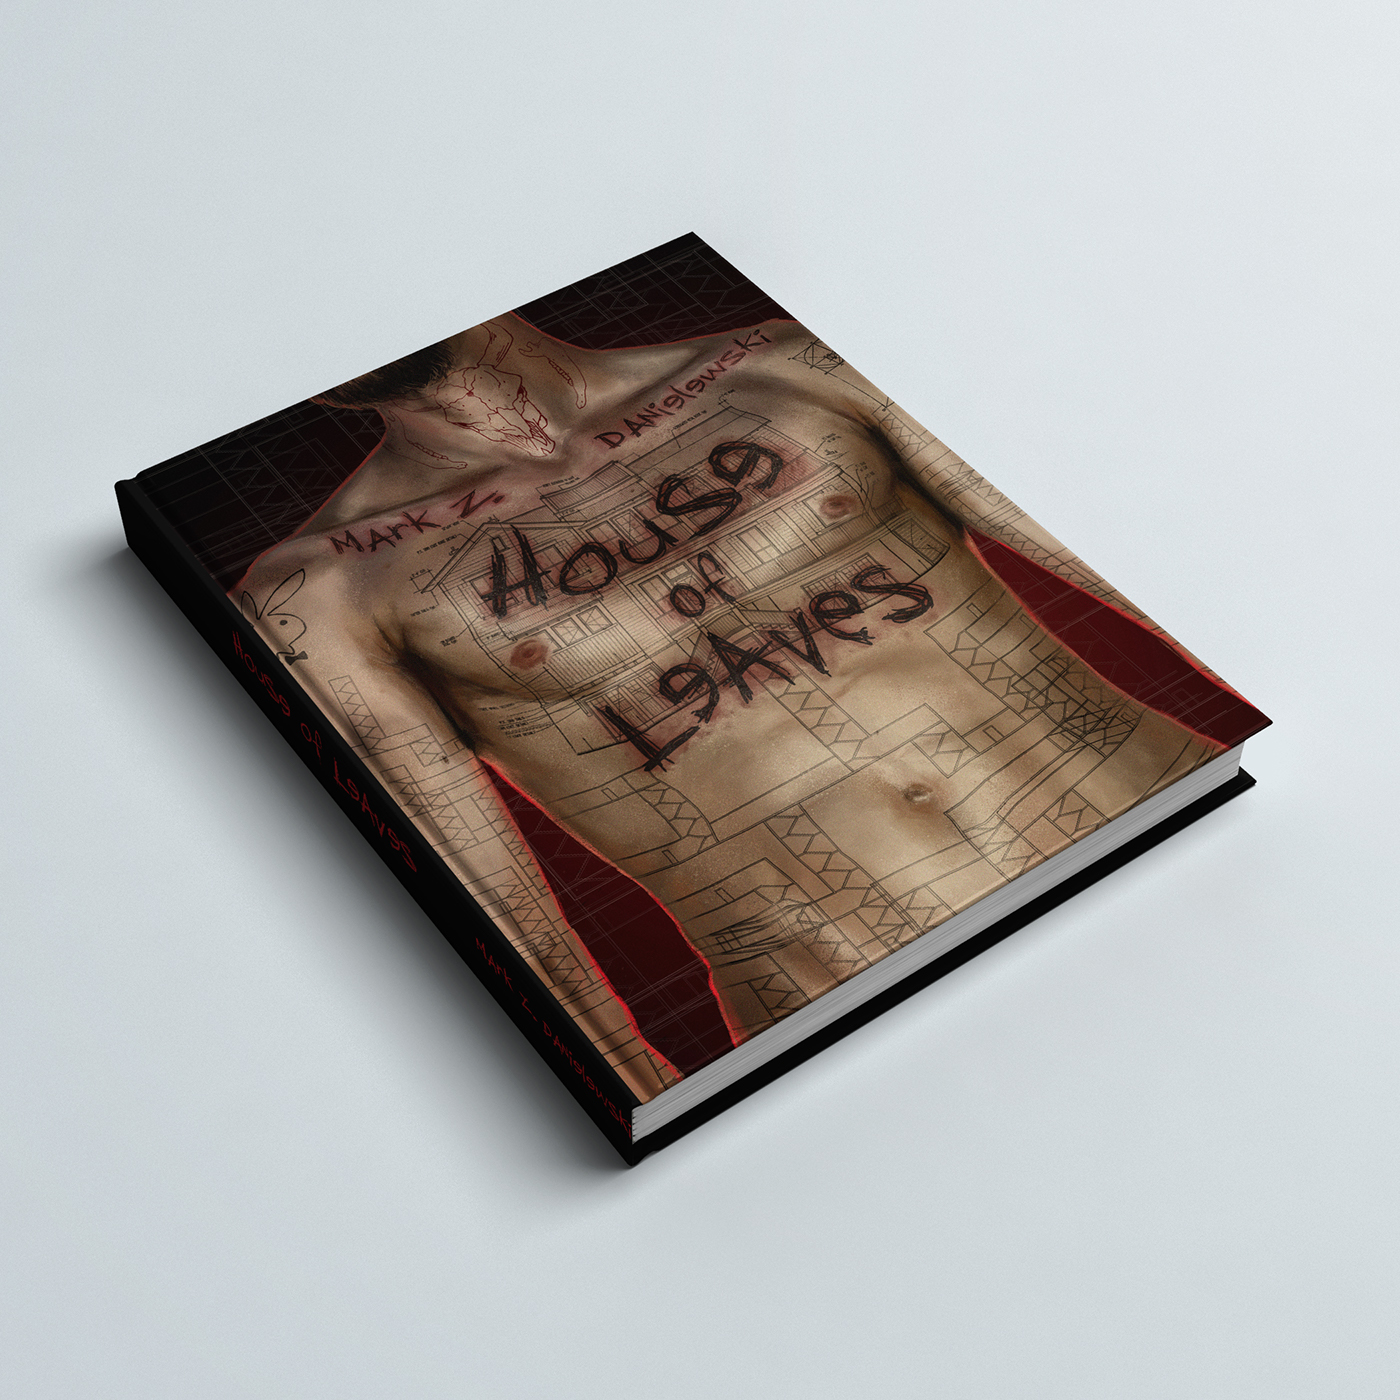 bookcover digitalpainting House of Leaves horror novel book illustration tattoos